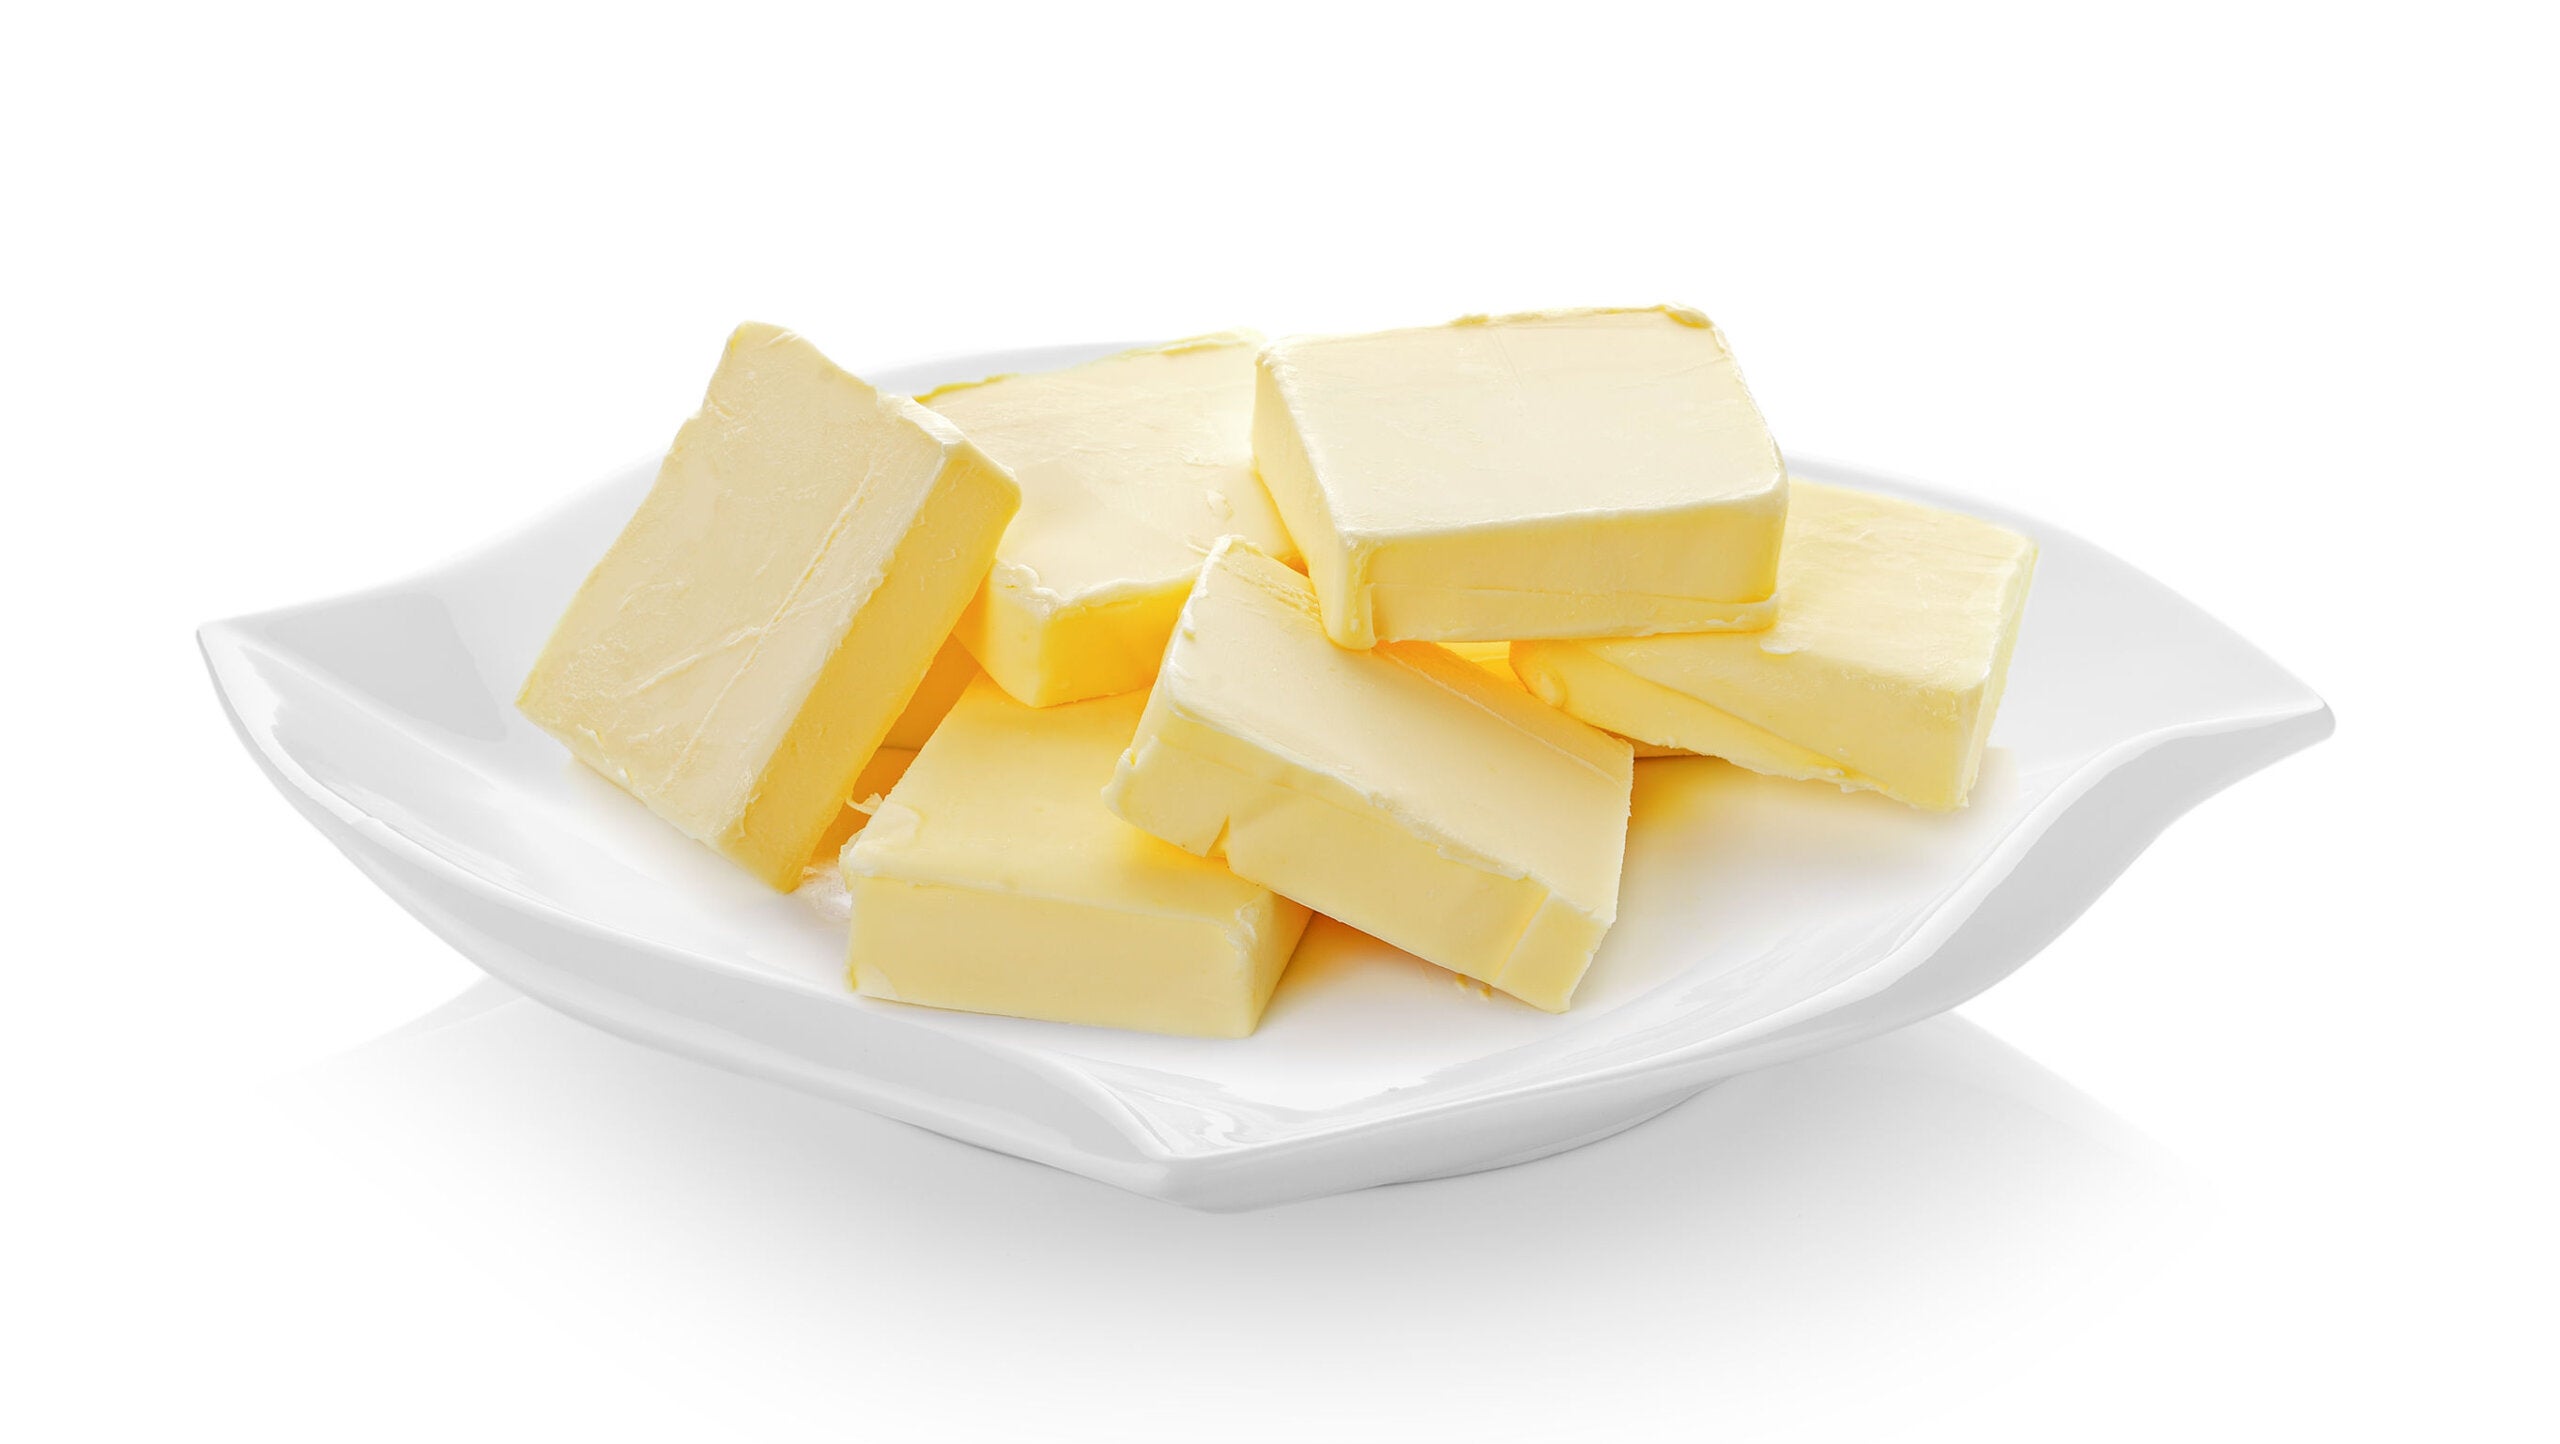 Manger du beurre peut être bénéfique pour votre santé, si vous savez choisir.